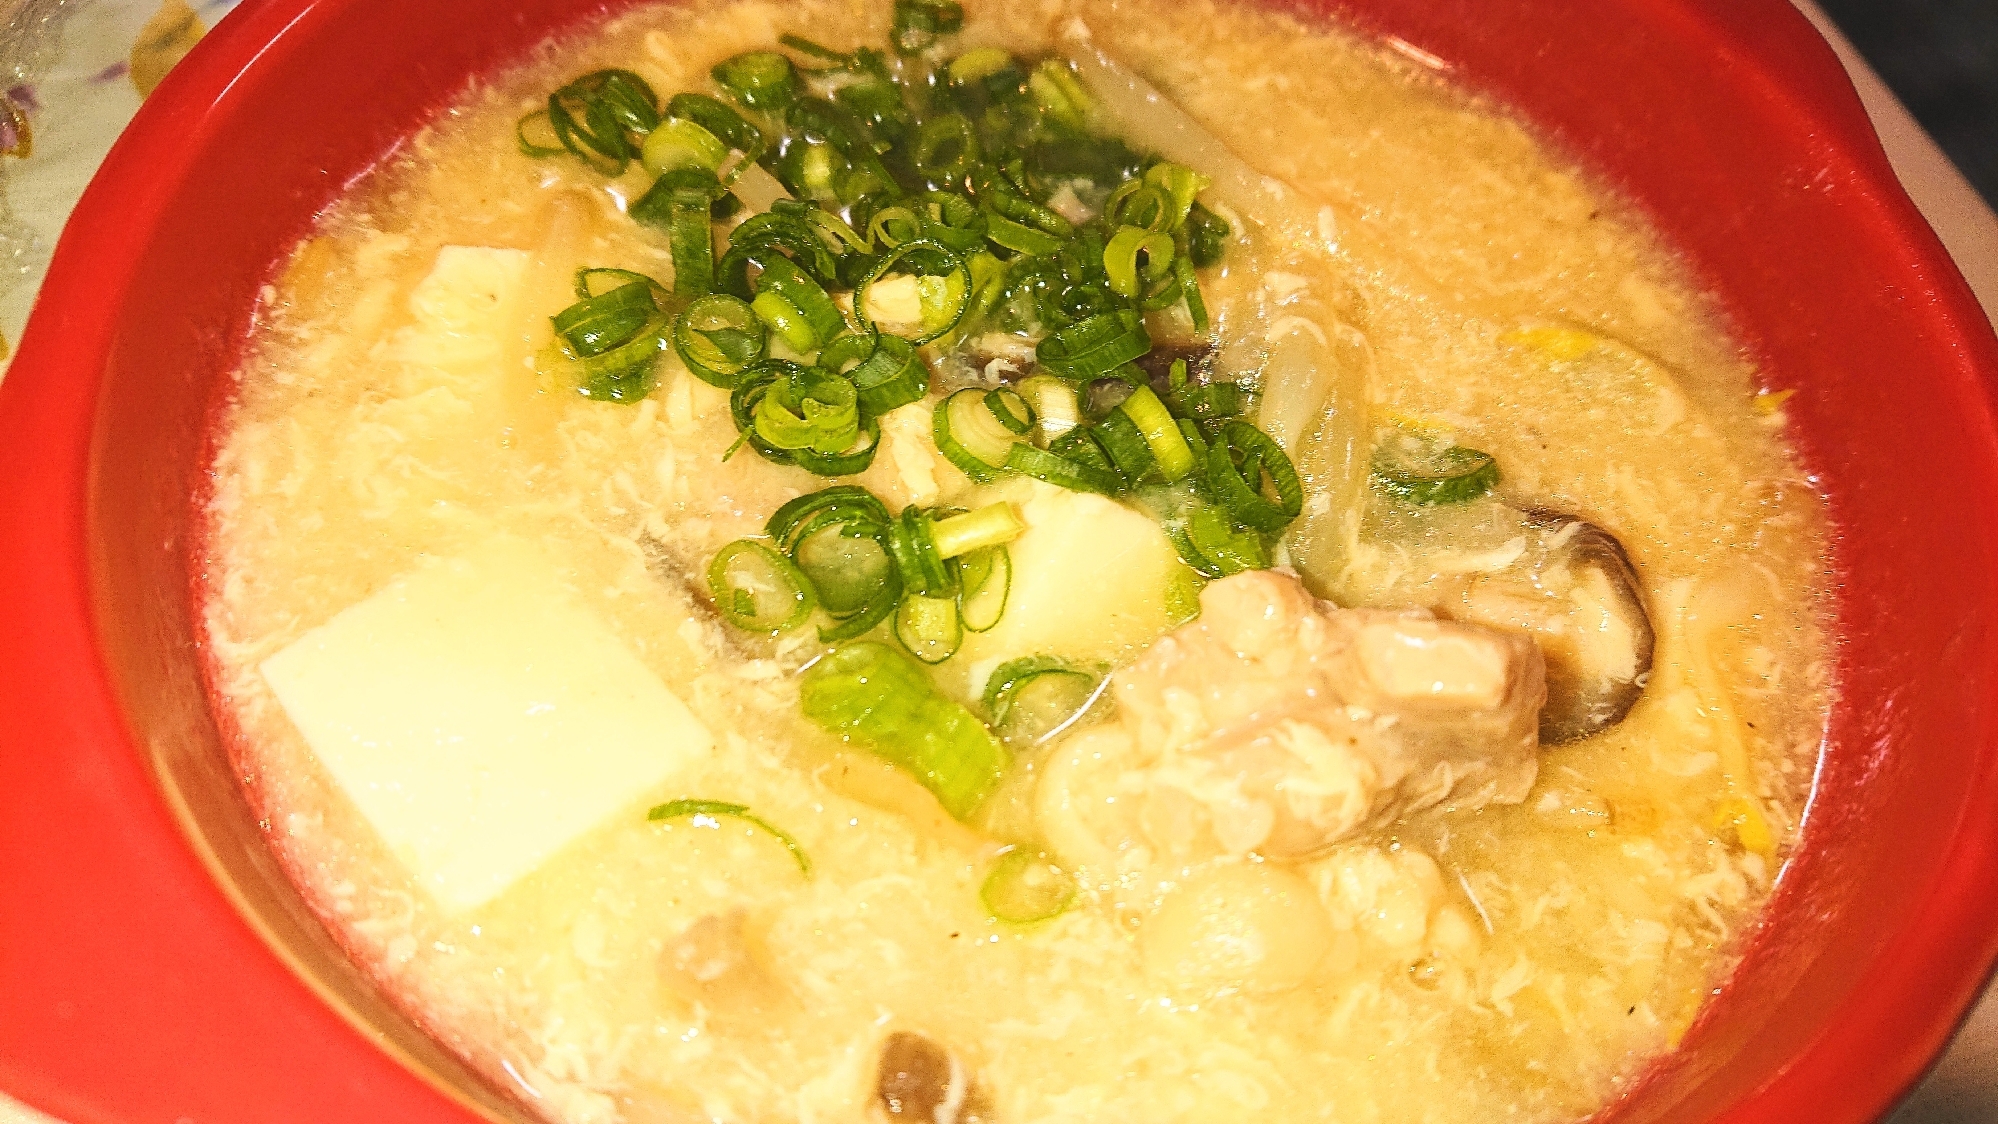 鍋キューブde♪豆腐と鶏モモのふわふわたまごスープ